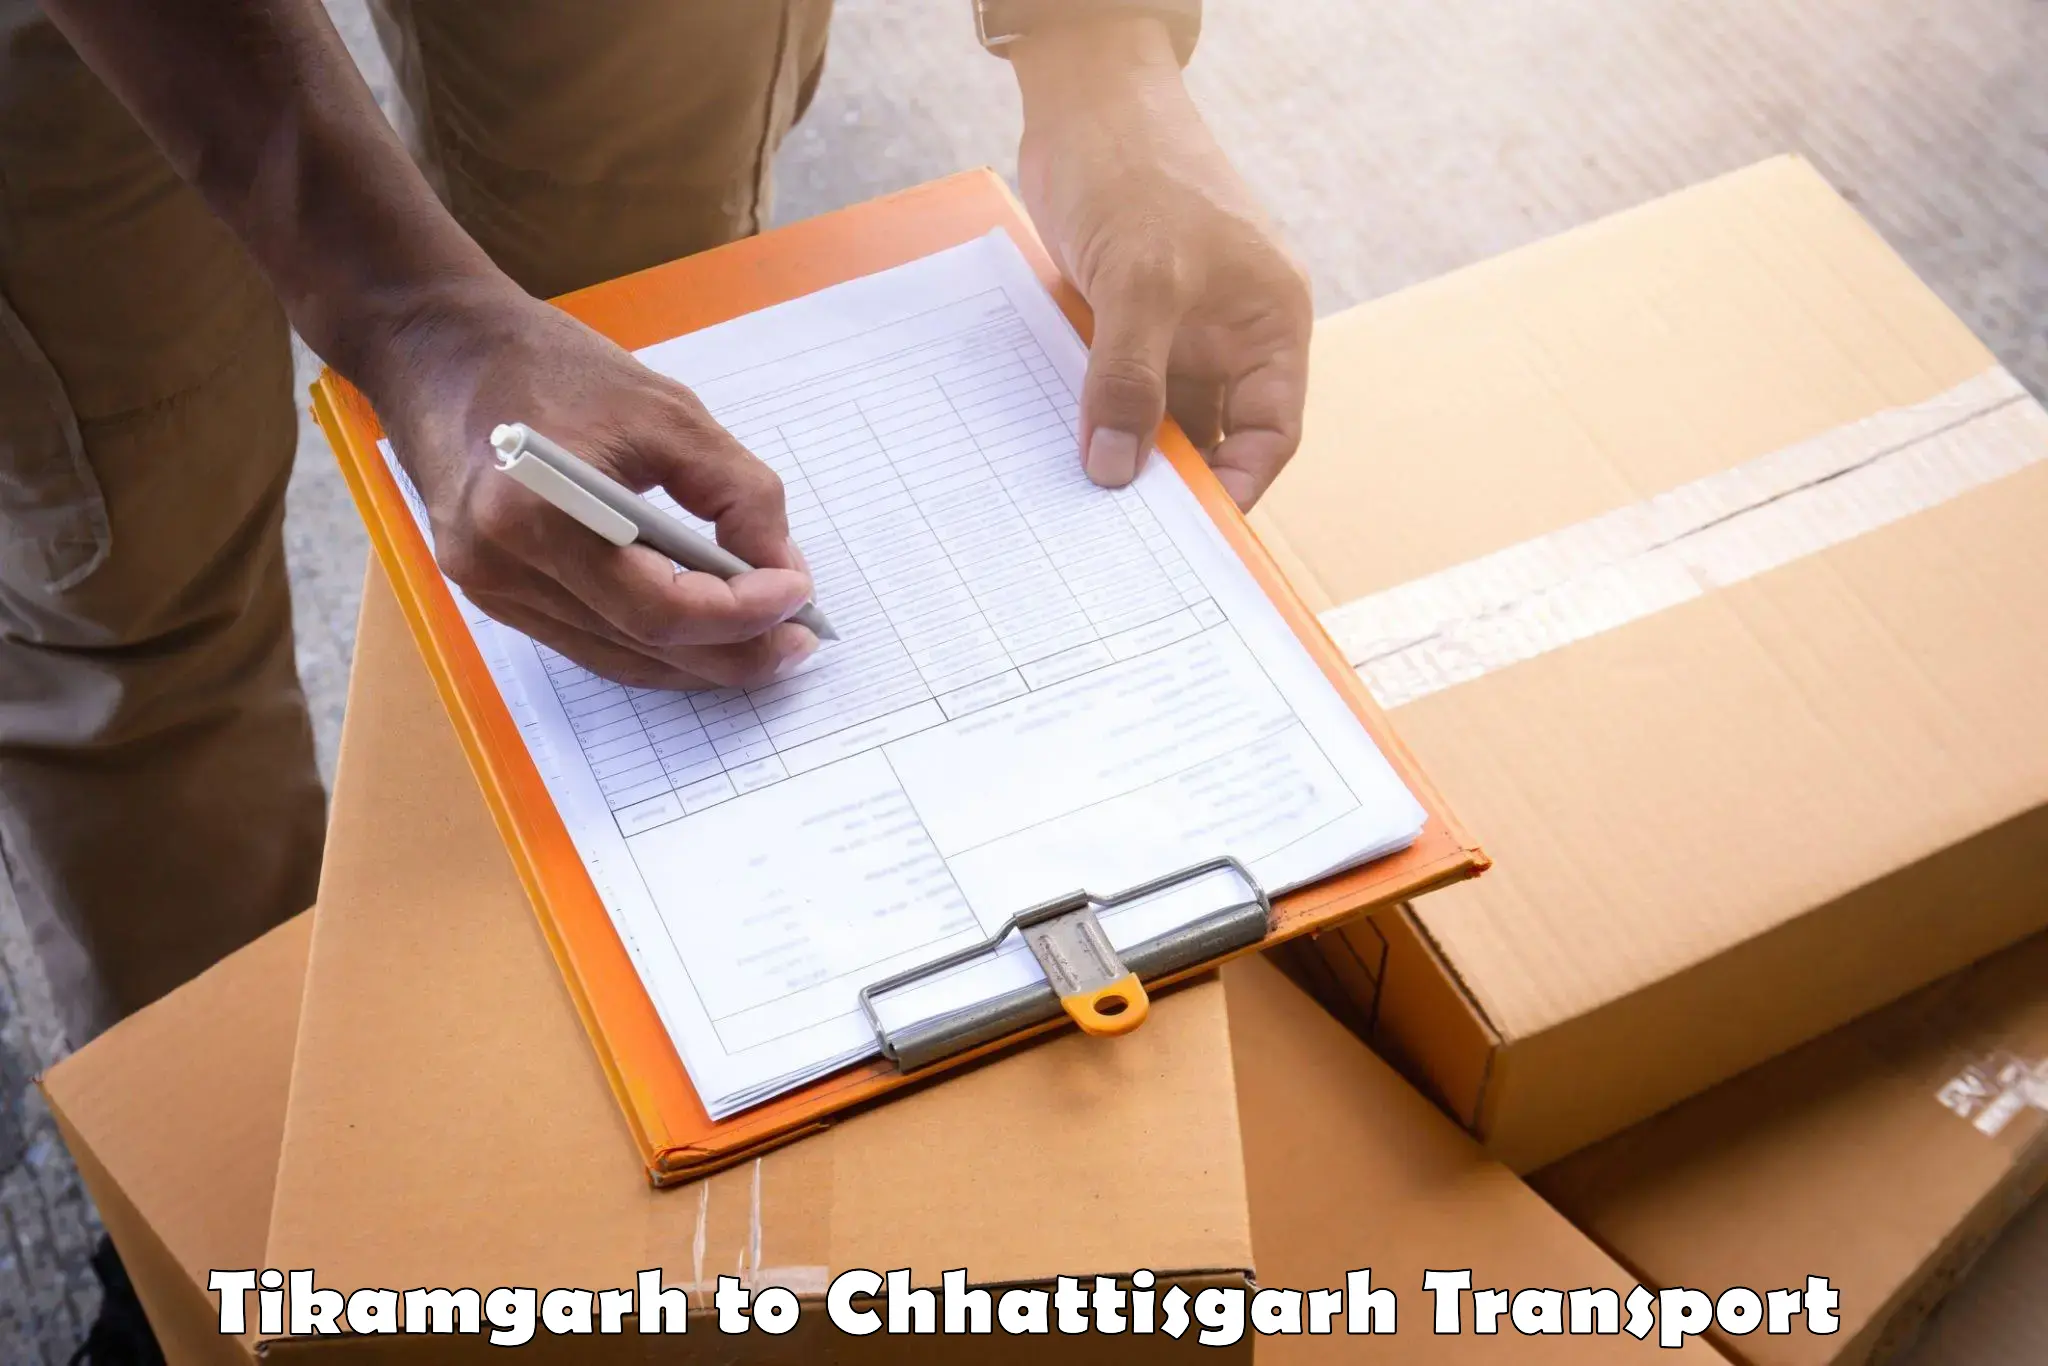 Truck transport companies in India Tikamgarh to Khairagarh